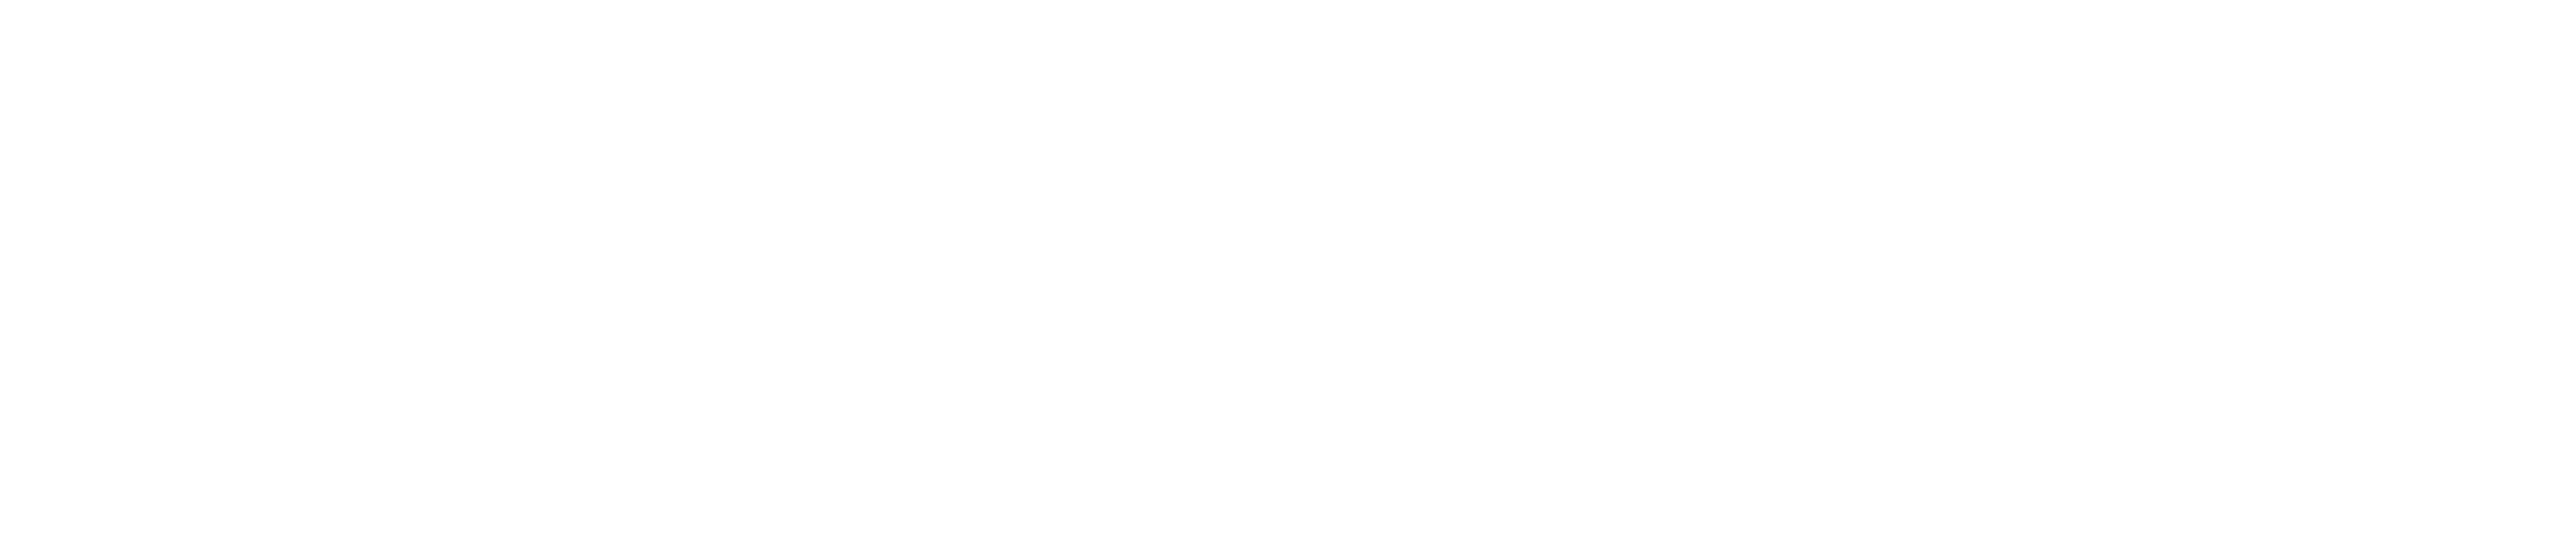 Gundry_Logo_White